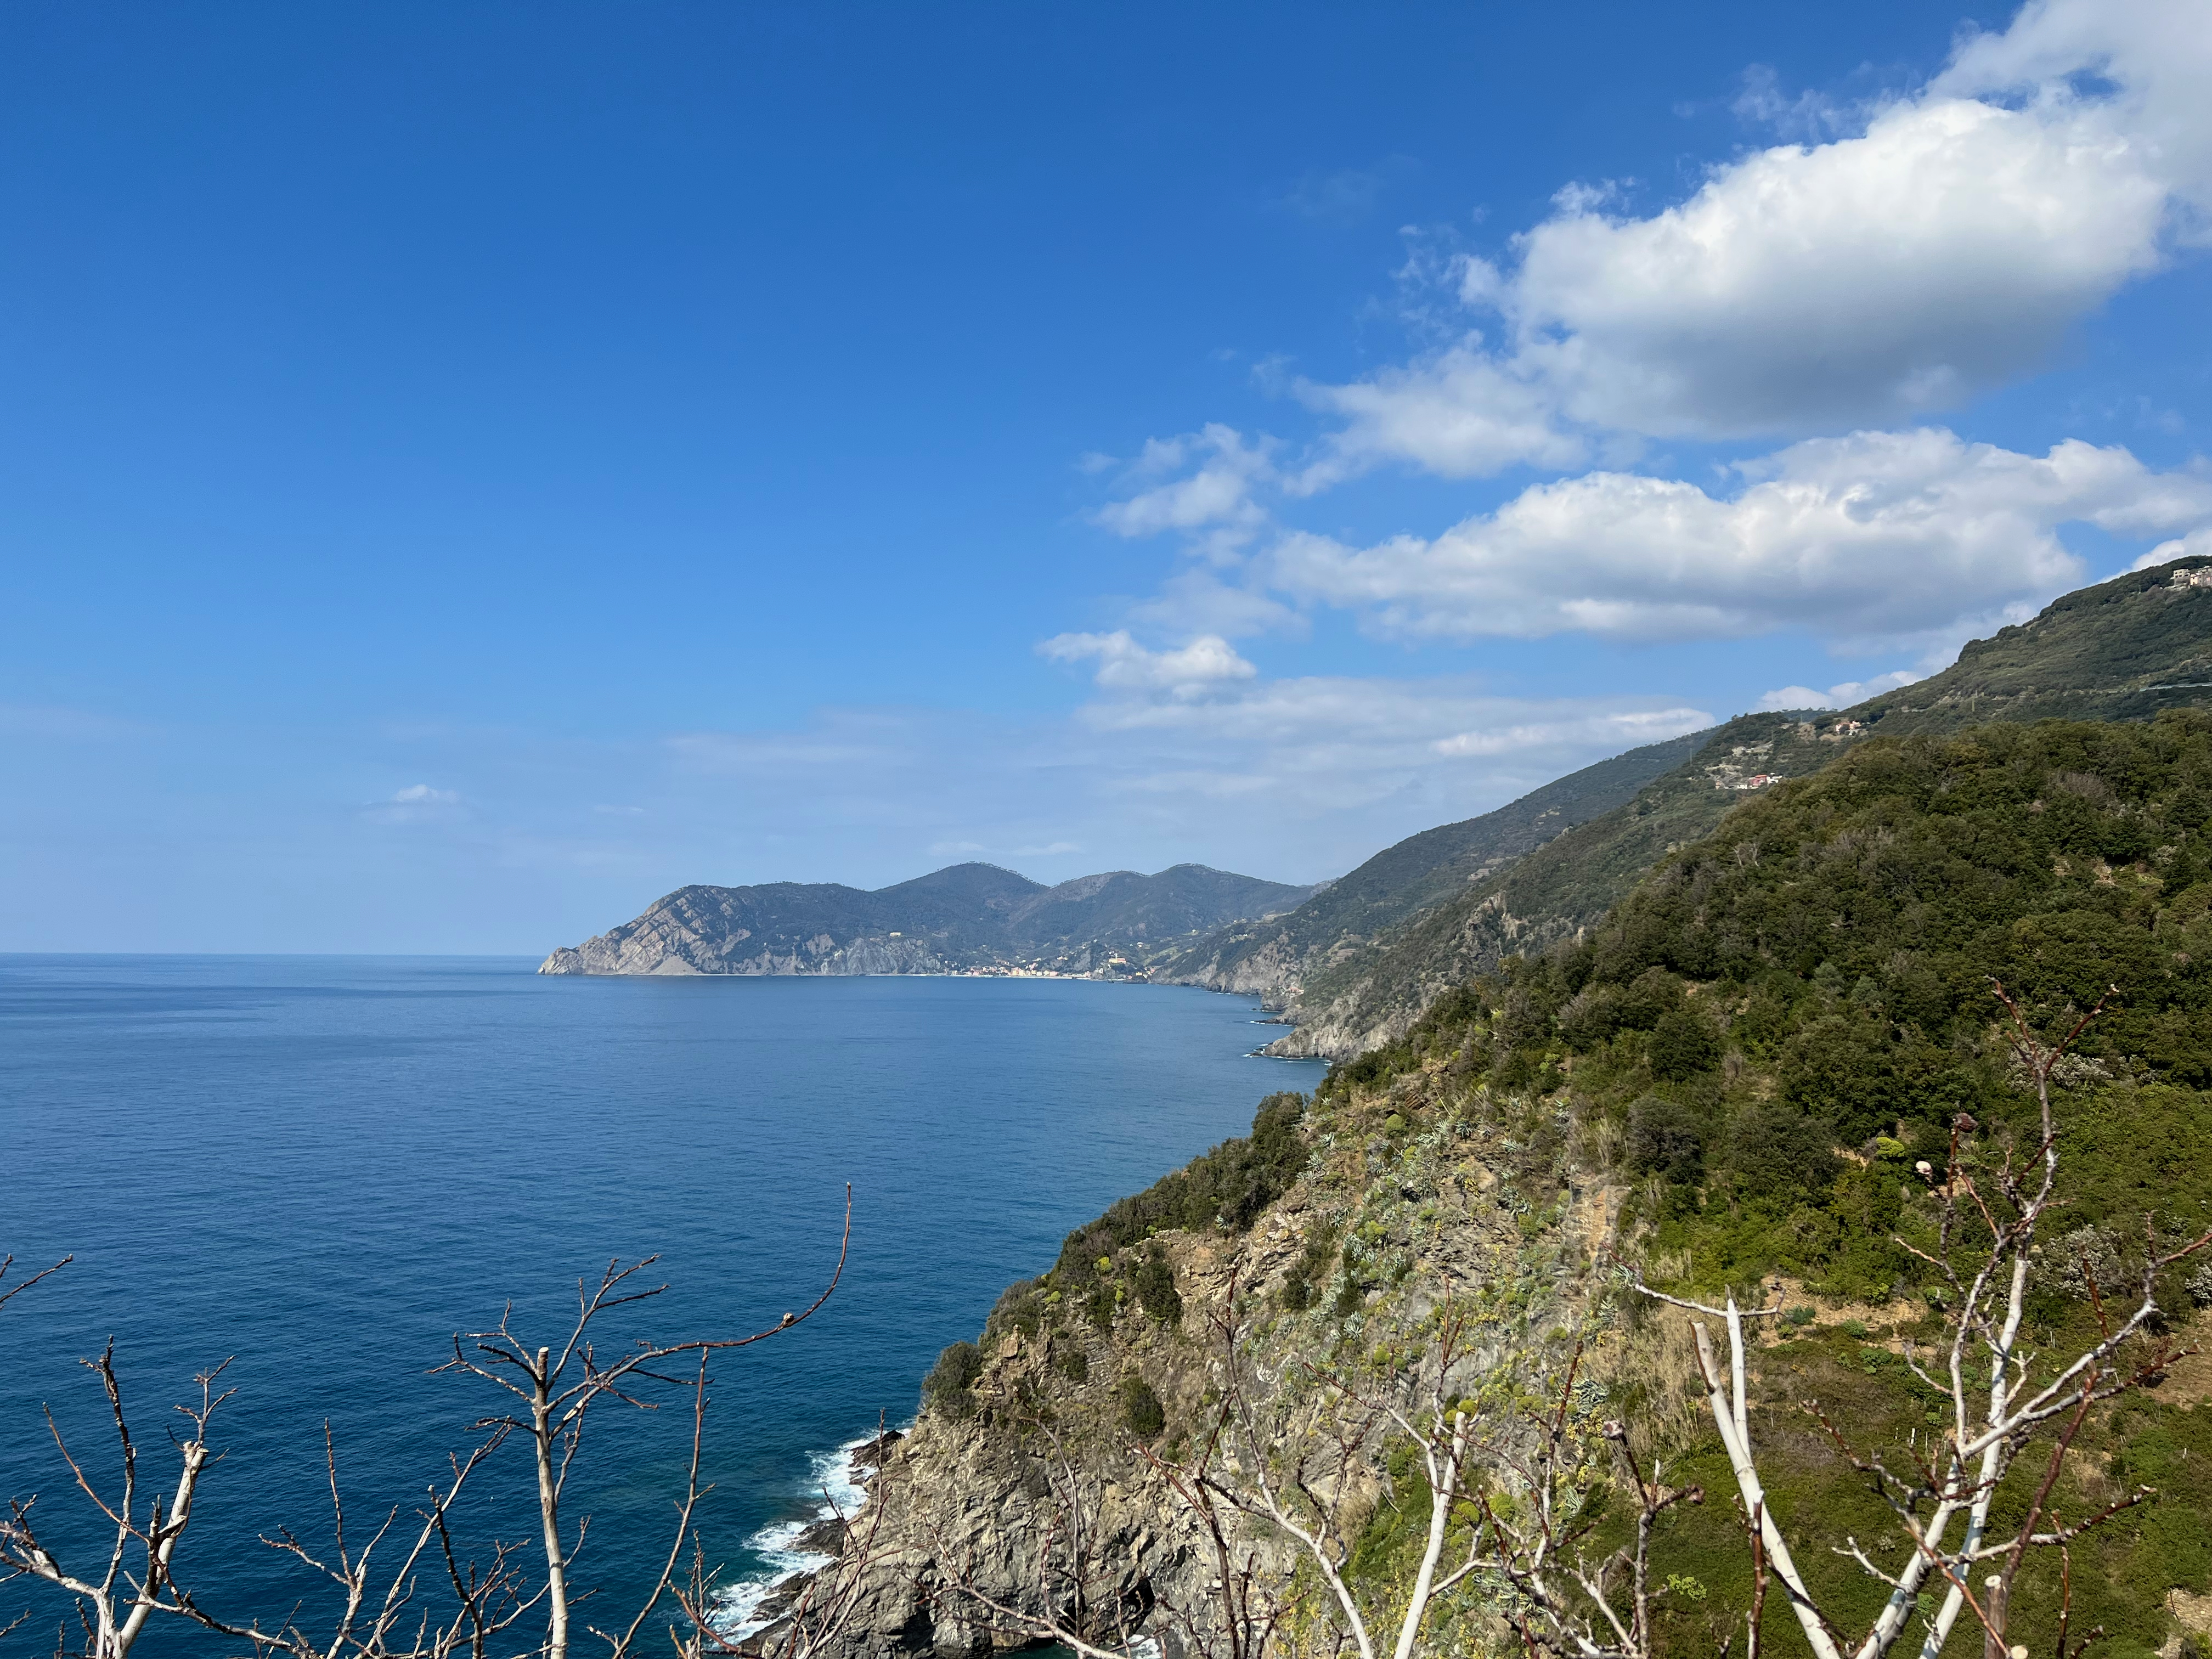 View of the coast from Corniglia